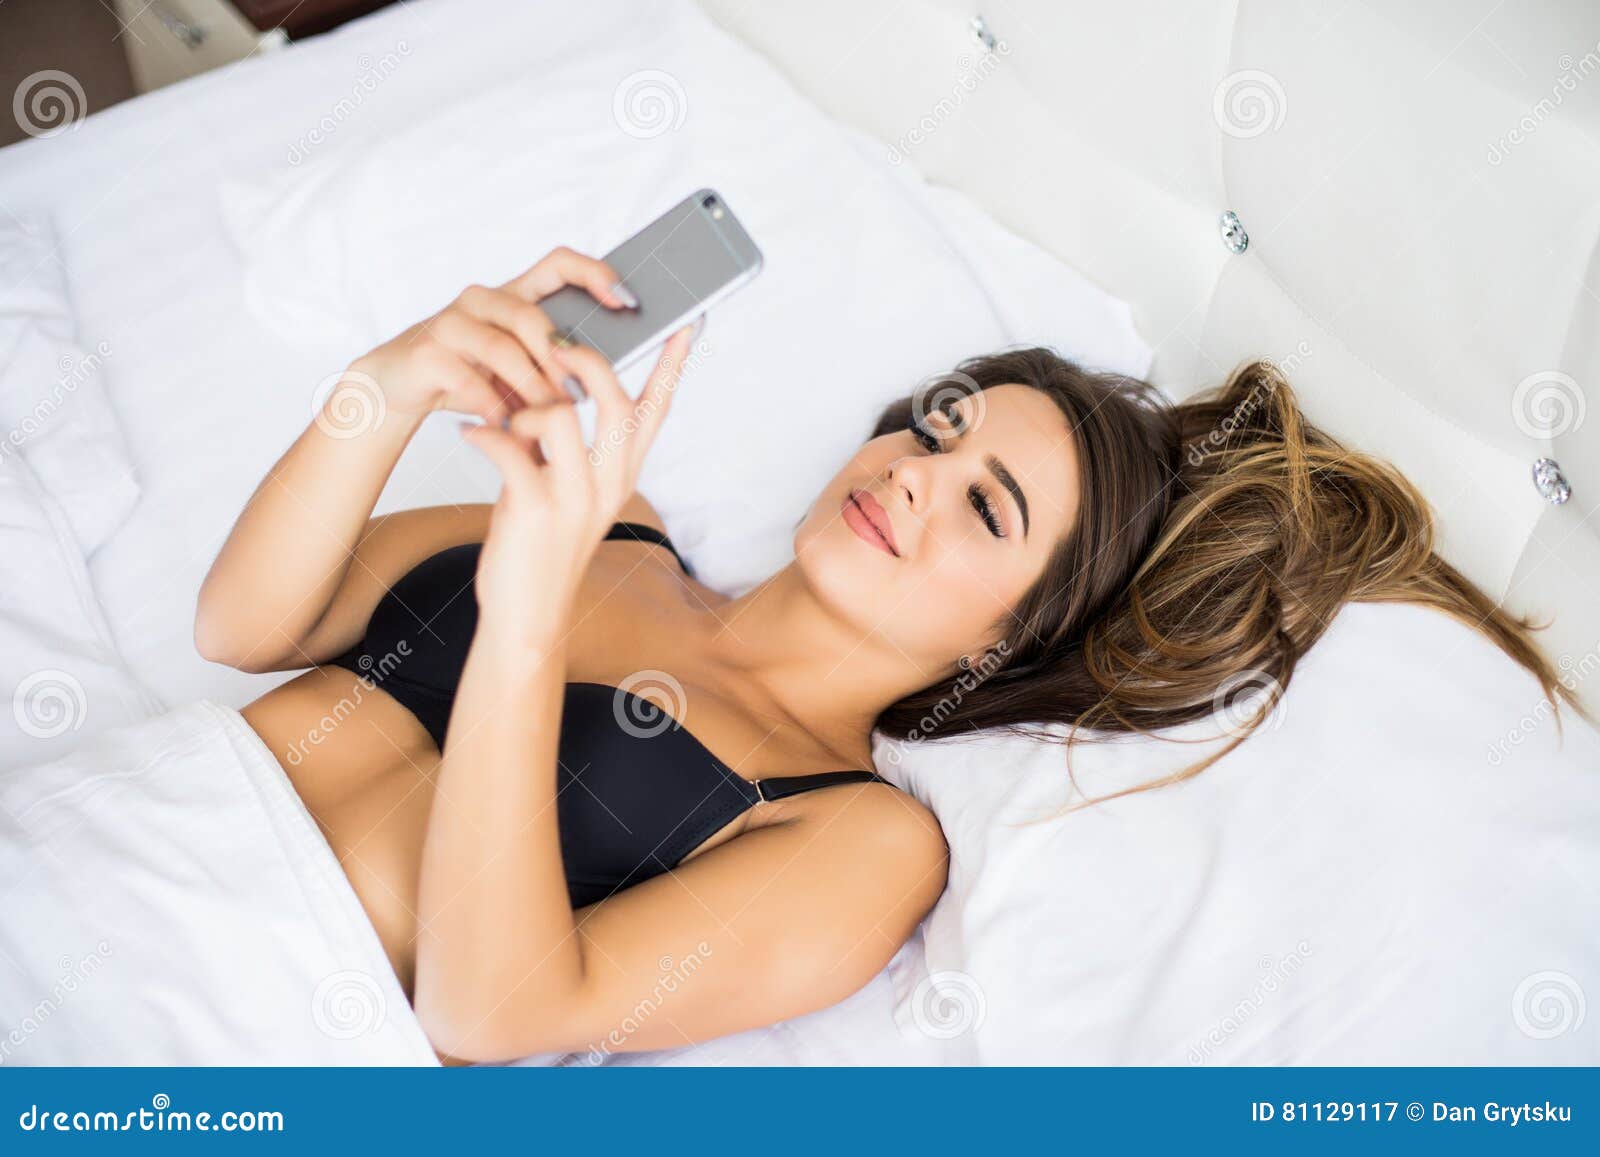 Лежит вибратор. Девушка лёжа в телефоне. Девушка в телефоне лежа в кровати. Девушка лежит с телефоном в руках. Похудение лёжа в телефоне.